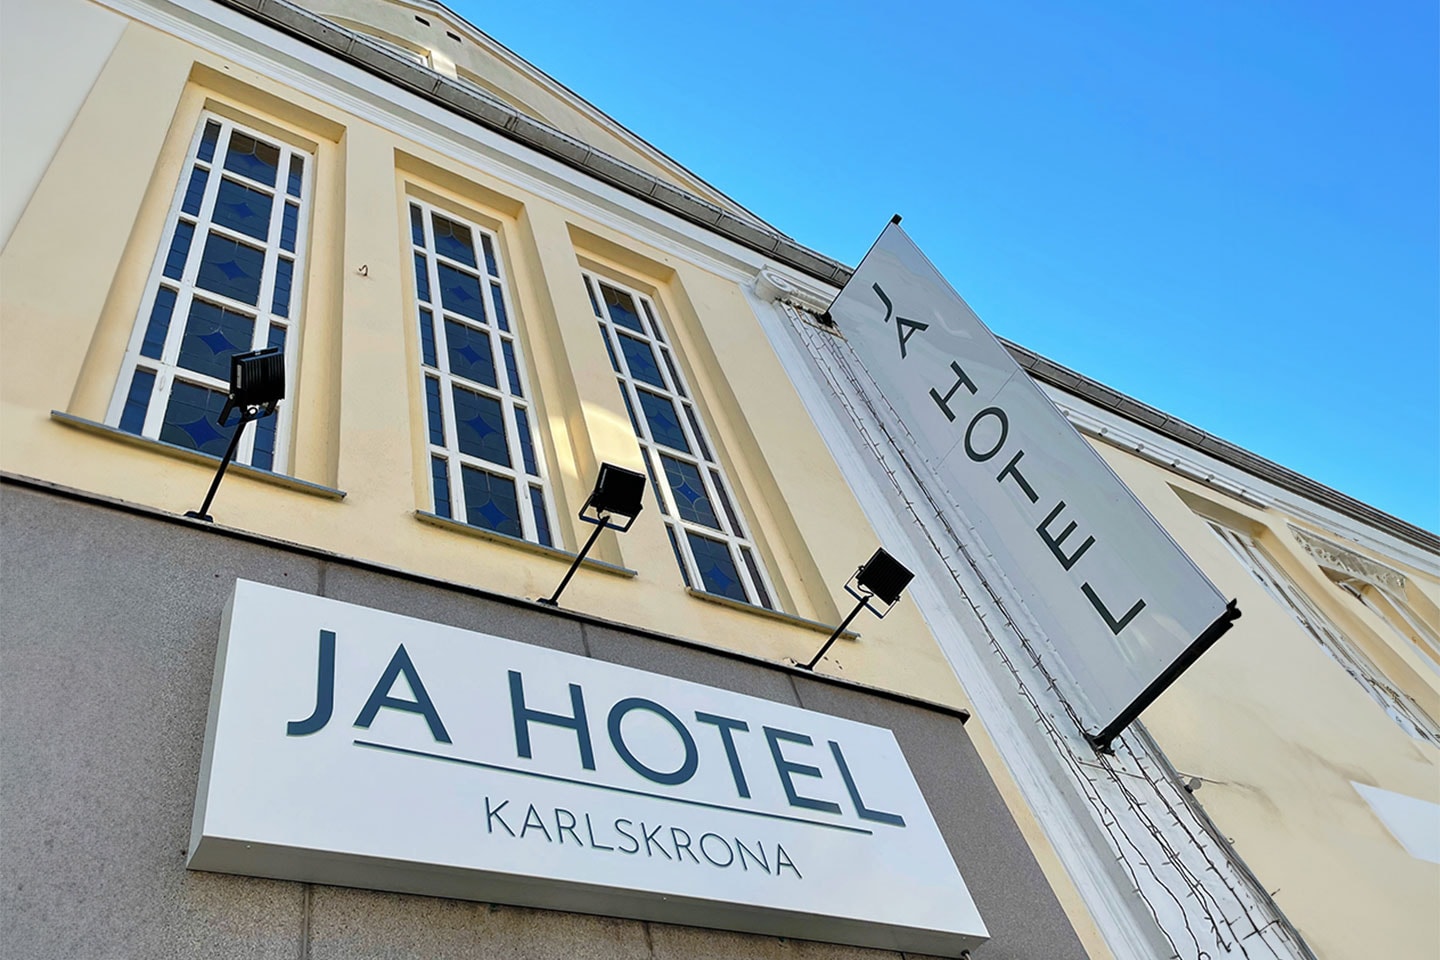 1 natt för 2 inkl. frukost på Ja hotell i Karlskrona (1 av 10)